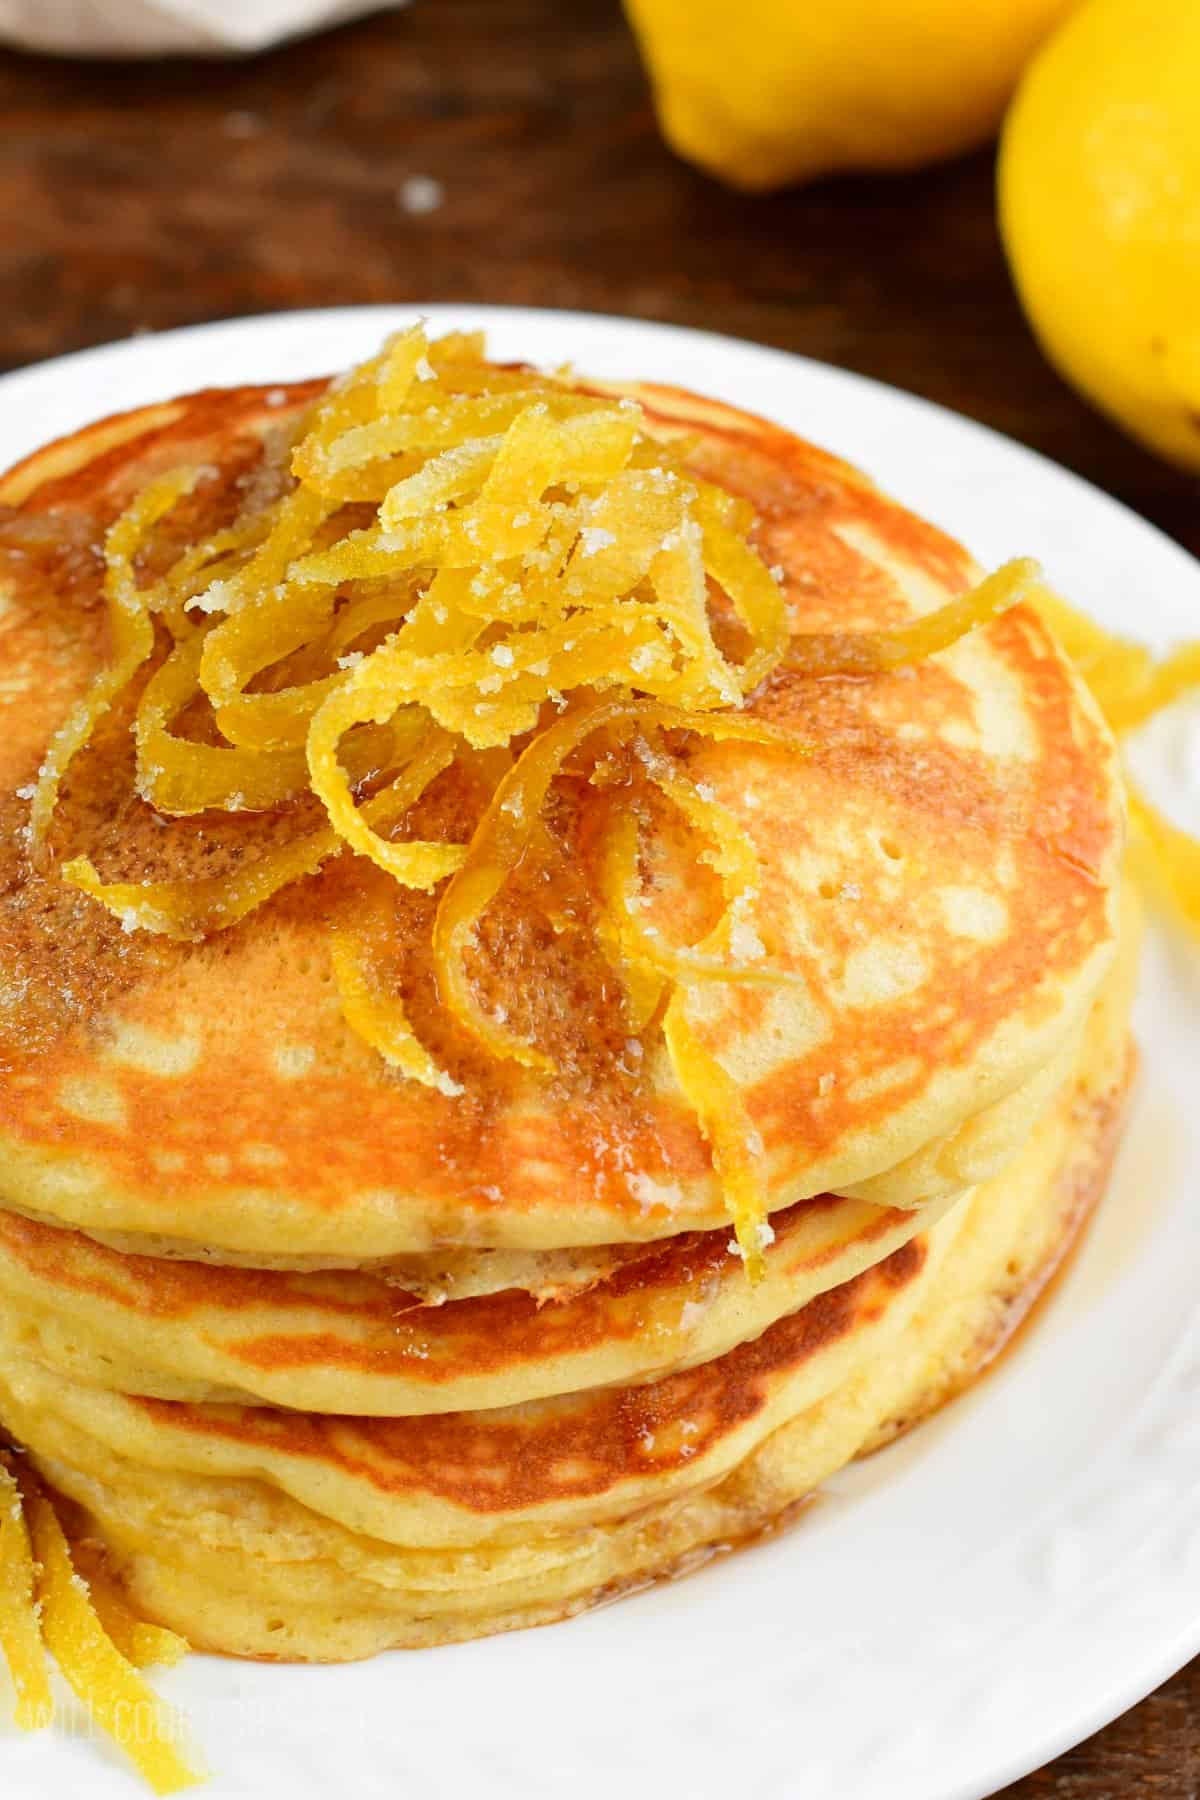 Lemon pancakes with lemon peels on top.